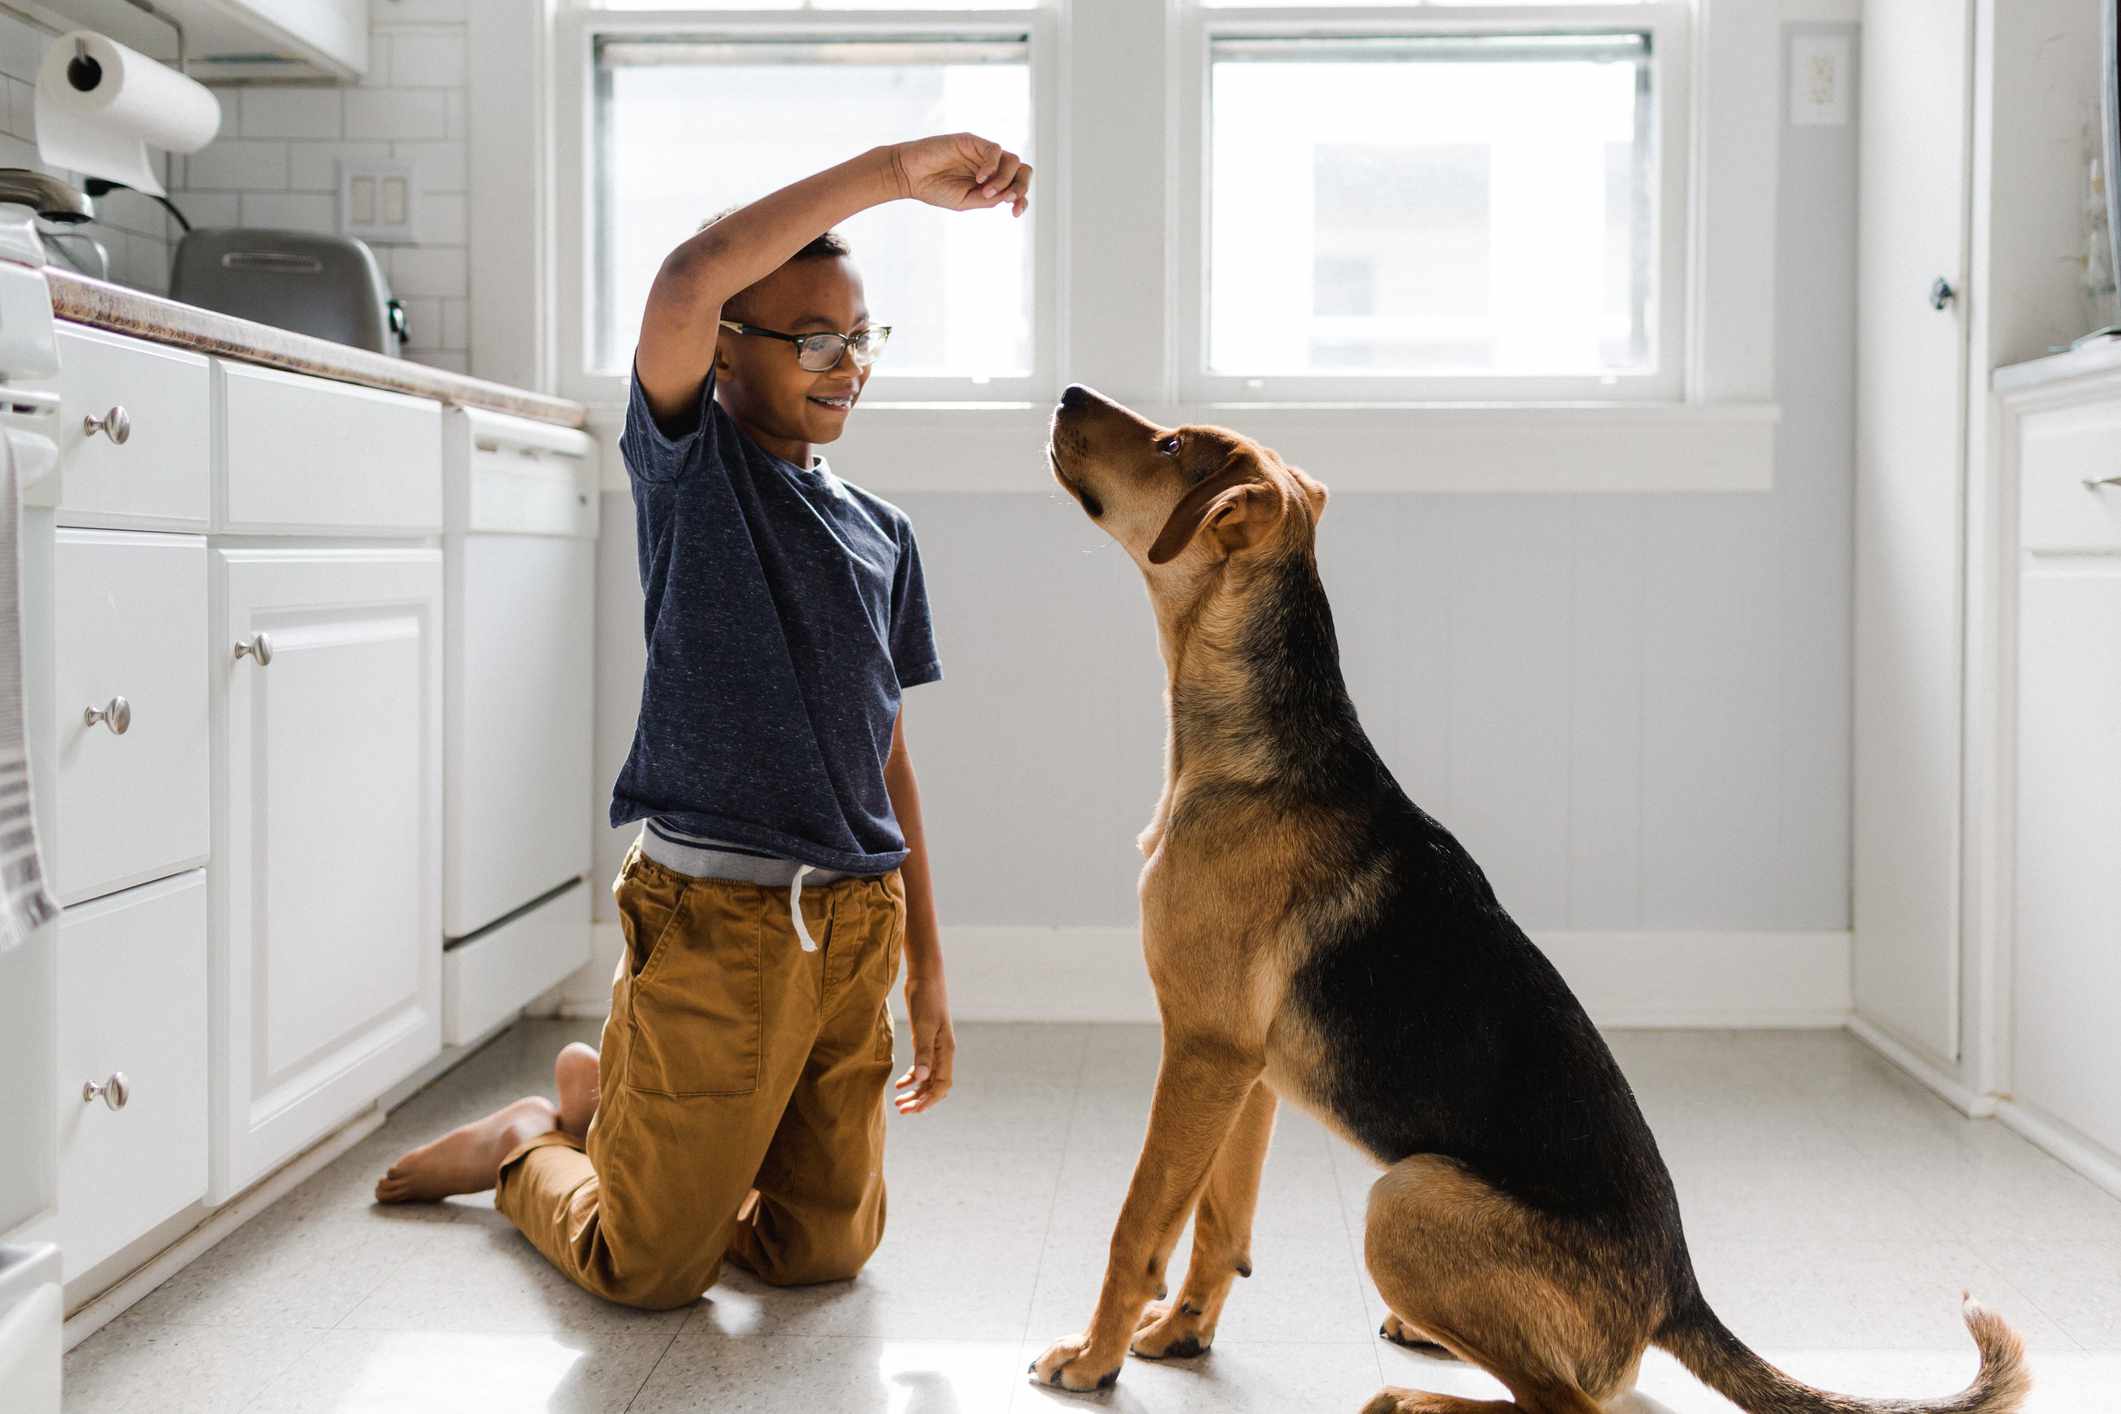 Menino com seu cachorro treinando com uma guloseima em uma cozinha bem iluminada